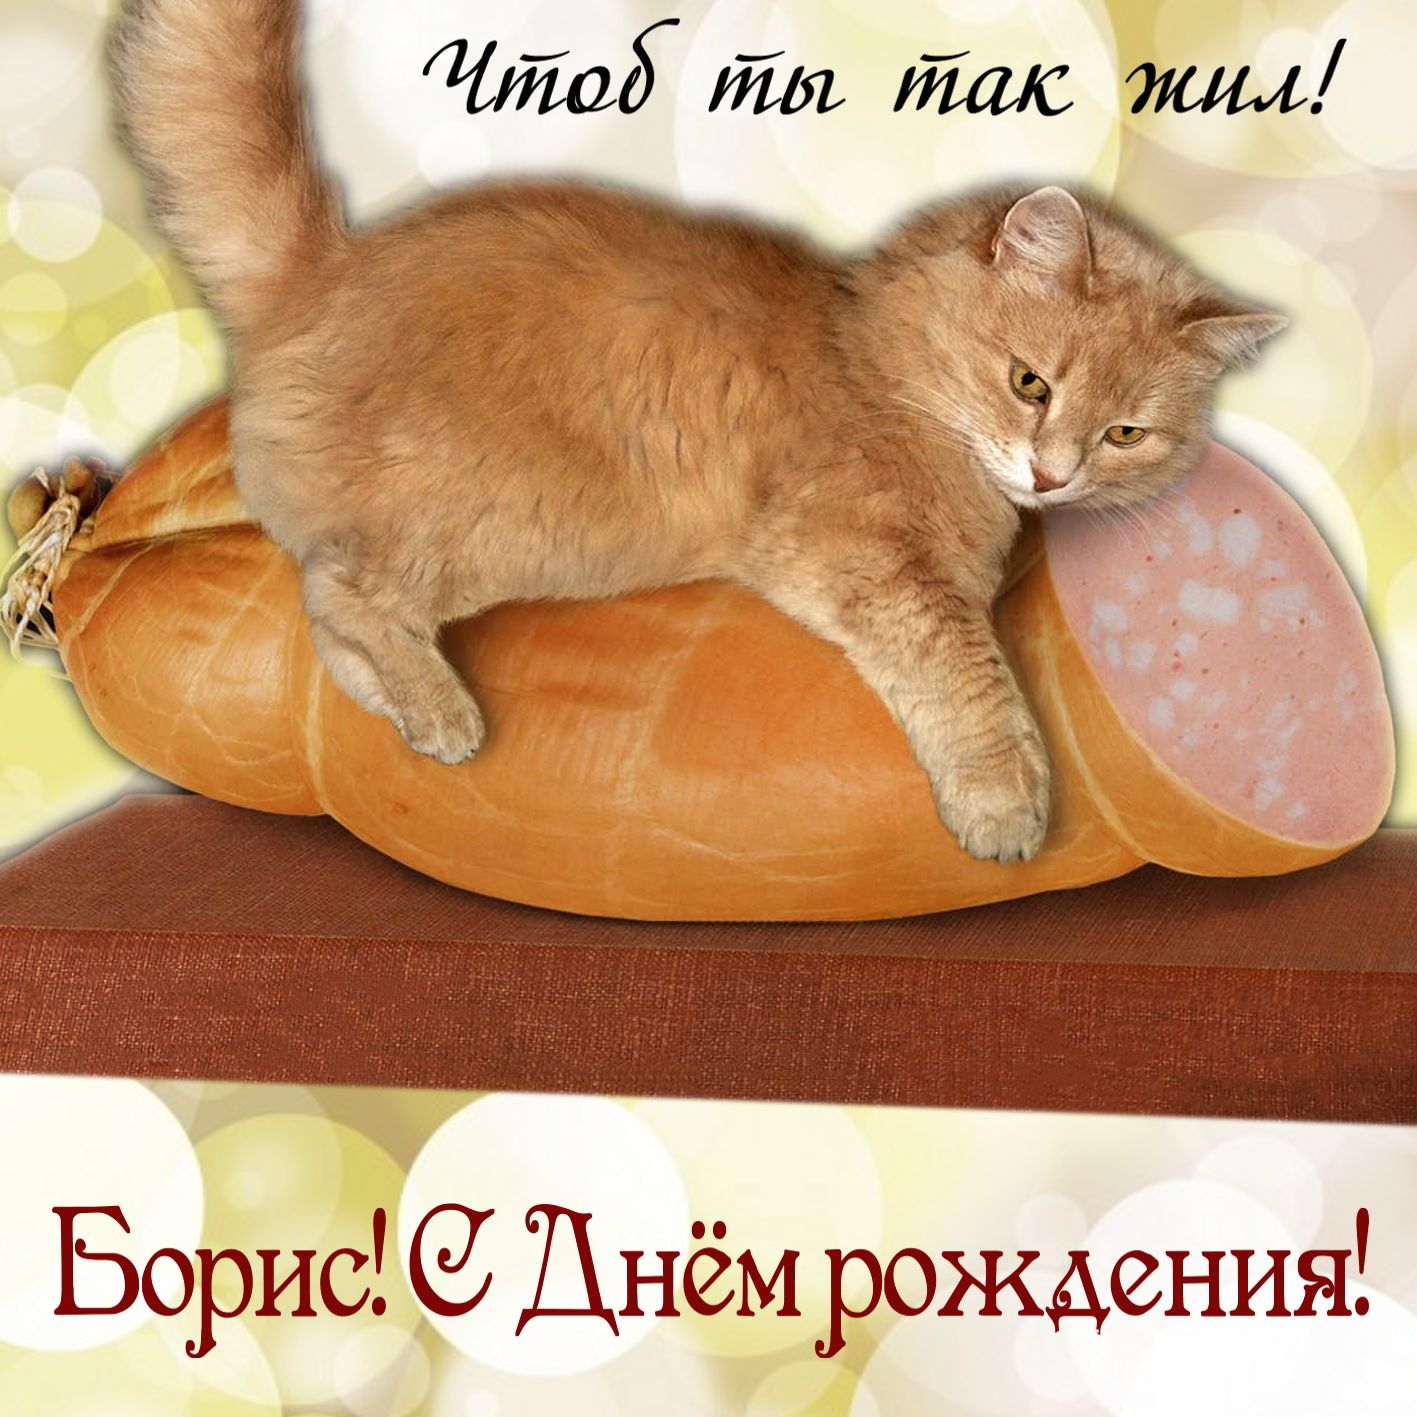 Картинка с красивым котиком и колбасой на День рождения Борису